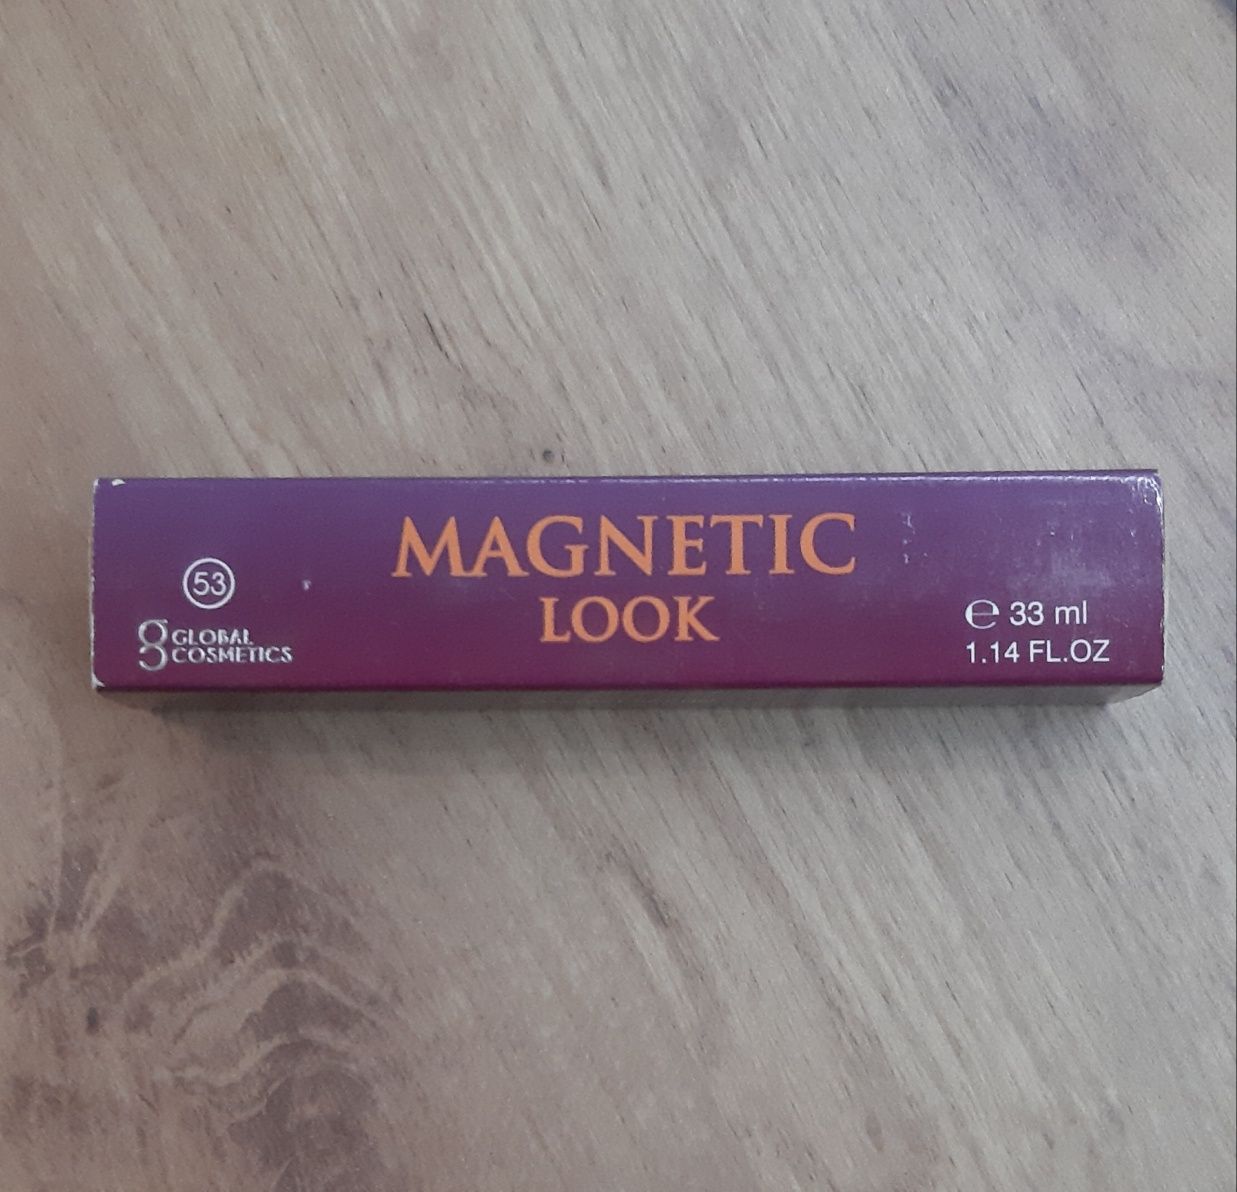 Damskie Perfumy Magnetic Look (Global Cosmetics)